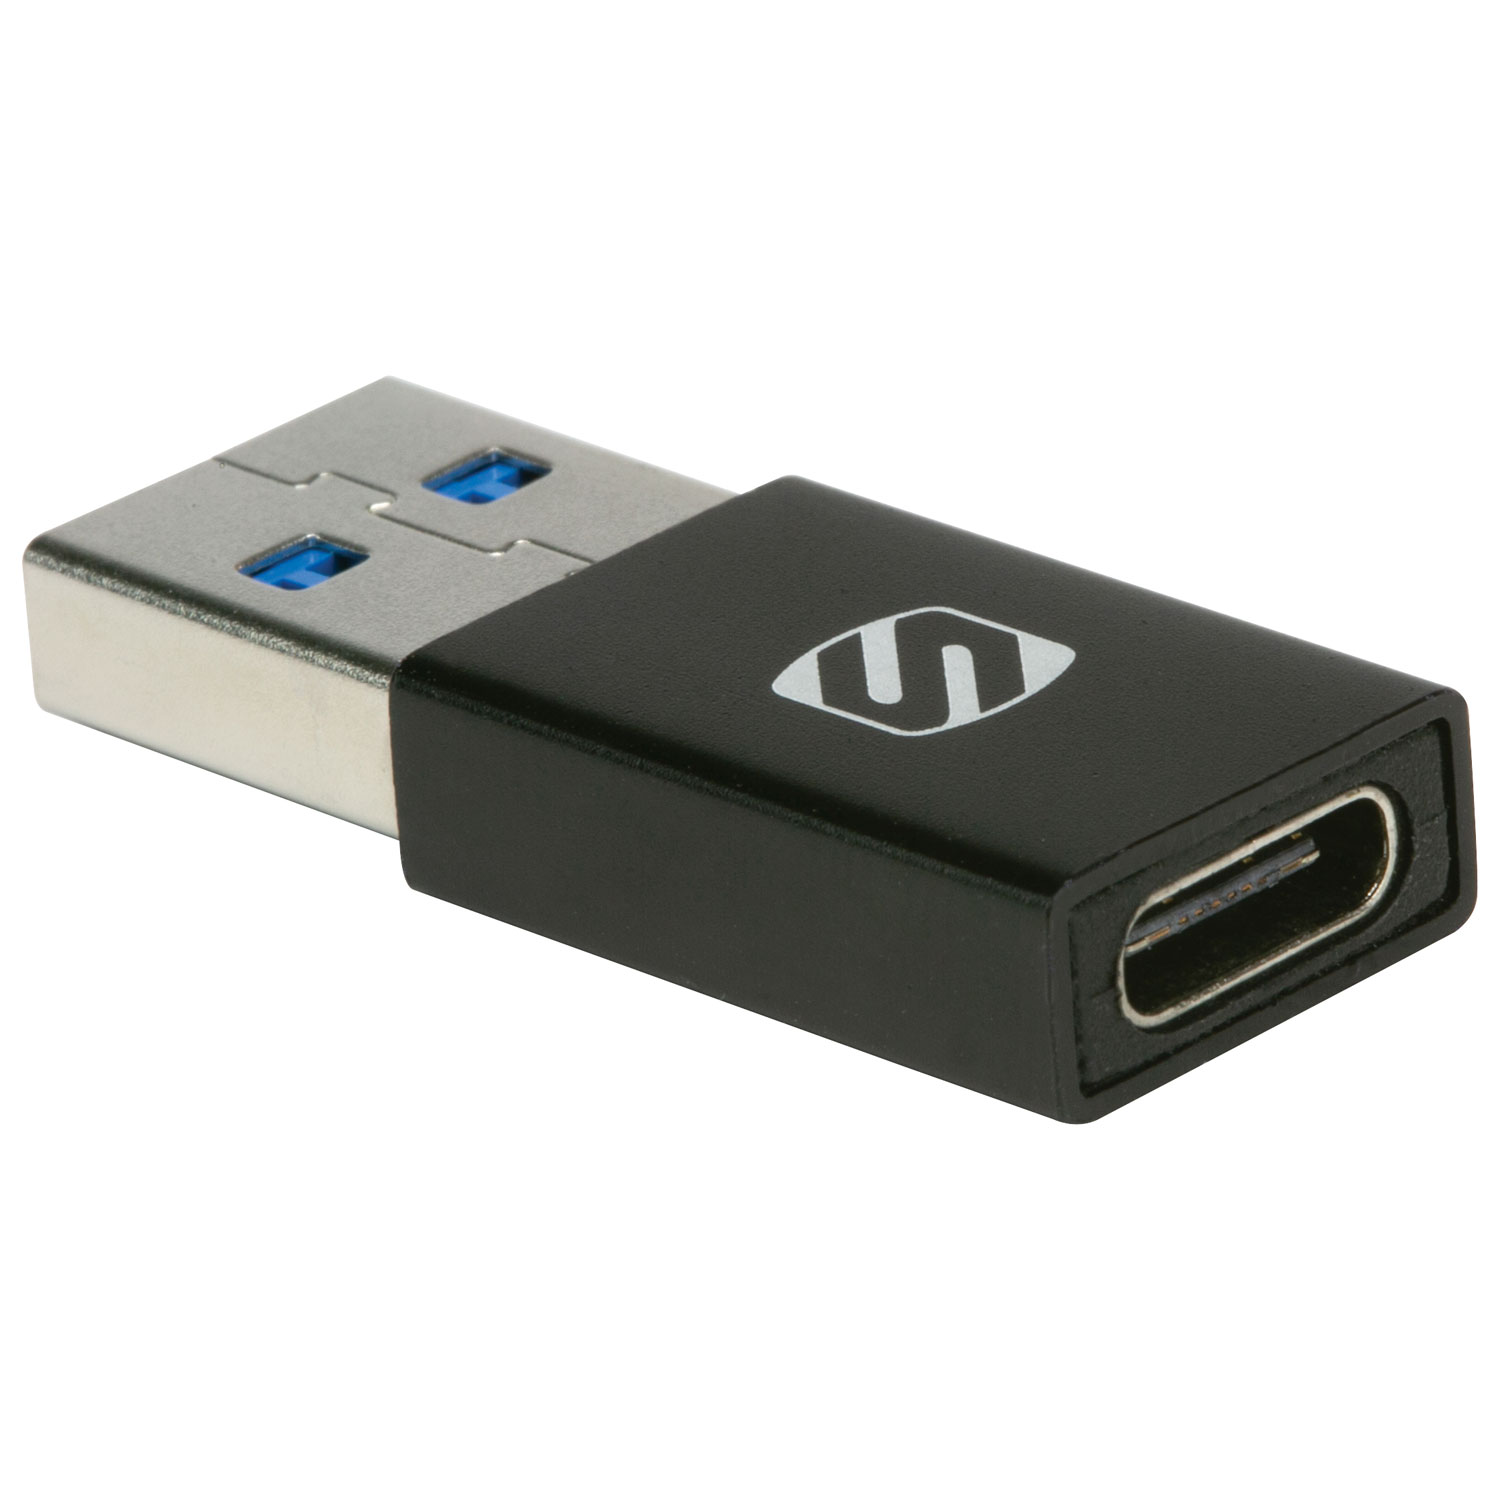 Scosche StrikeLine USB-C/USB 3.0 Adapter - 2 Pack - Black